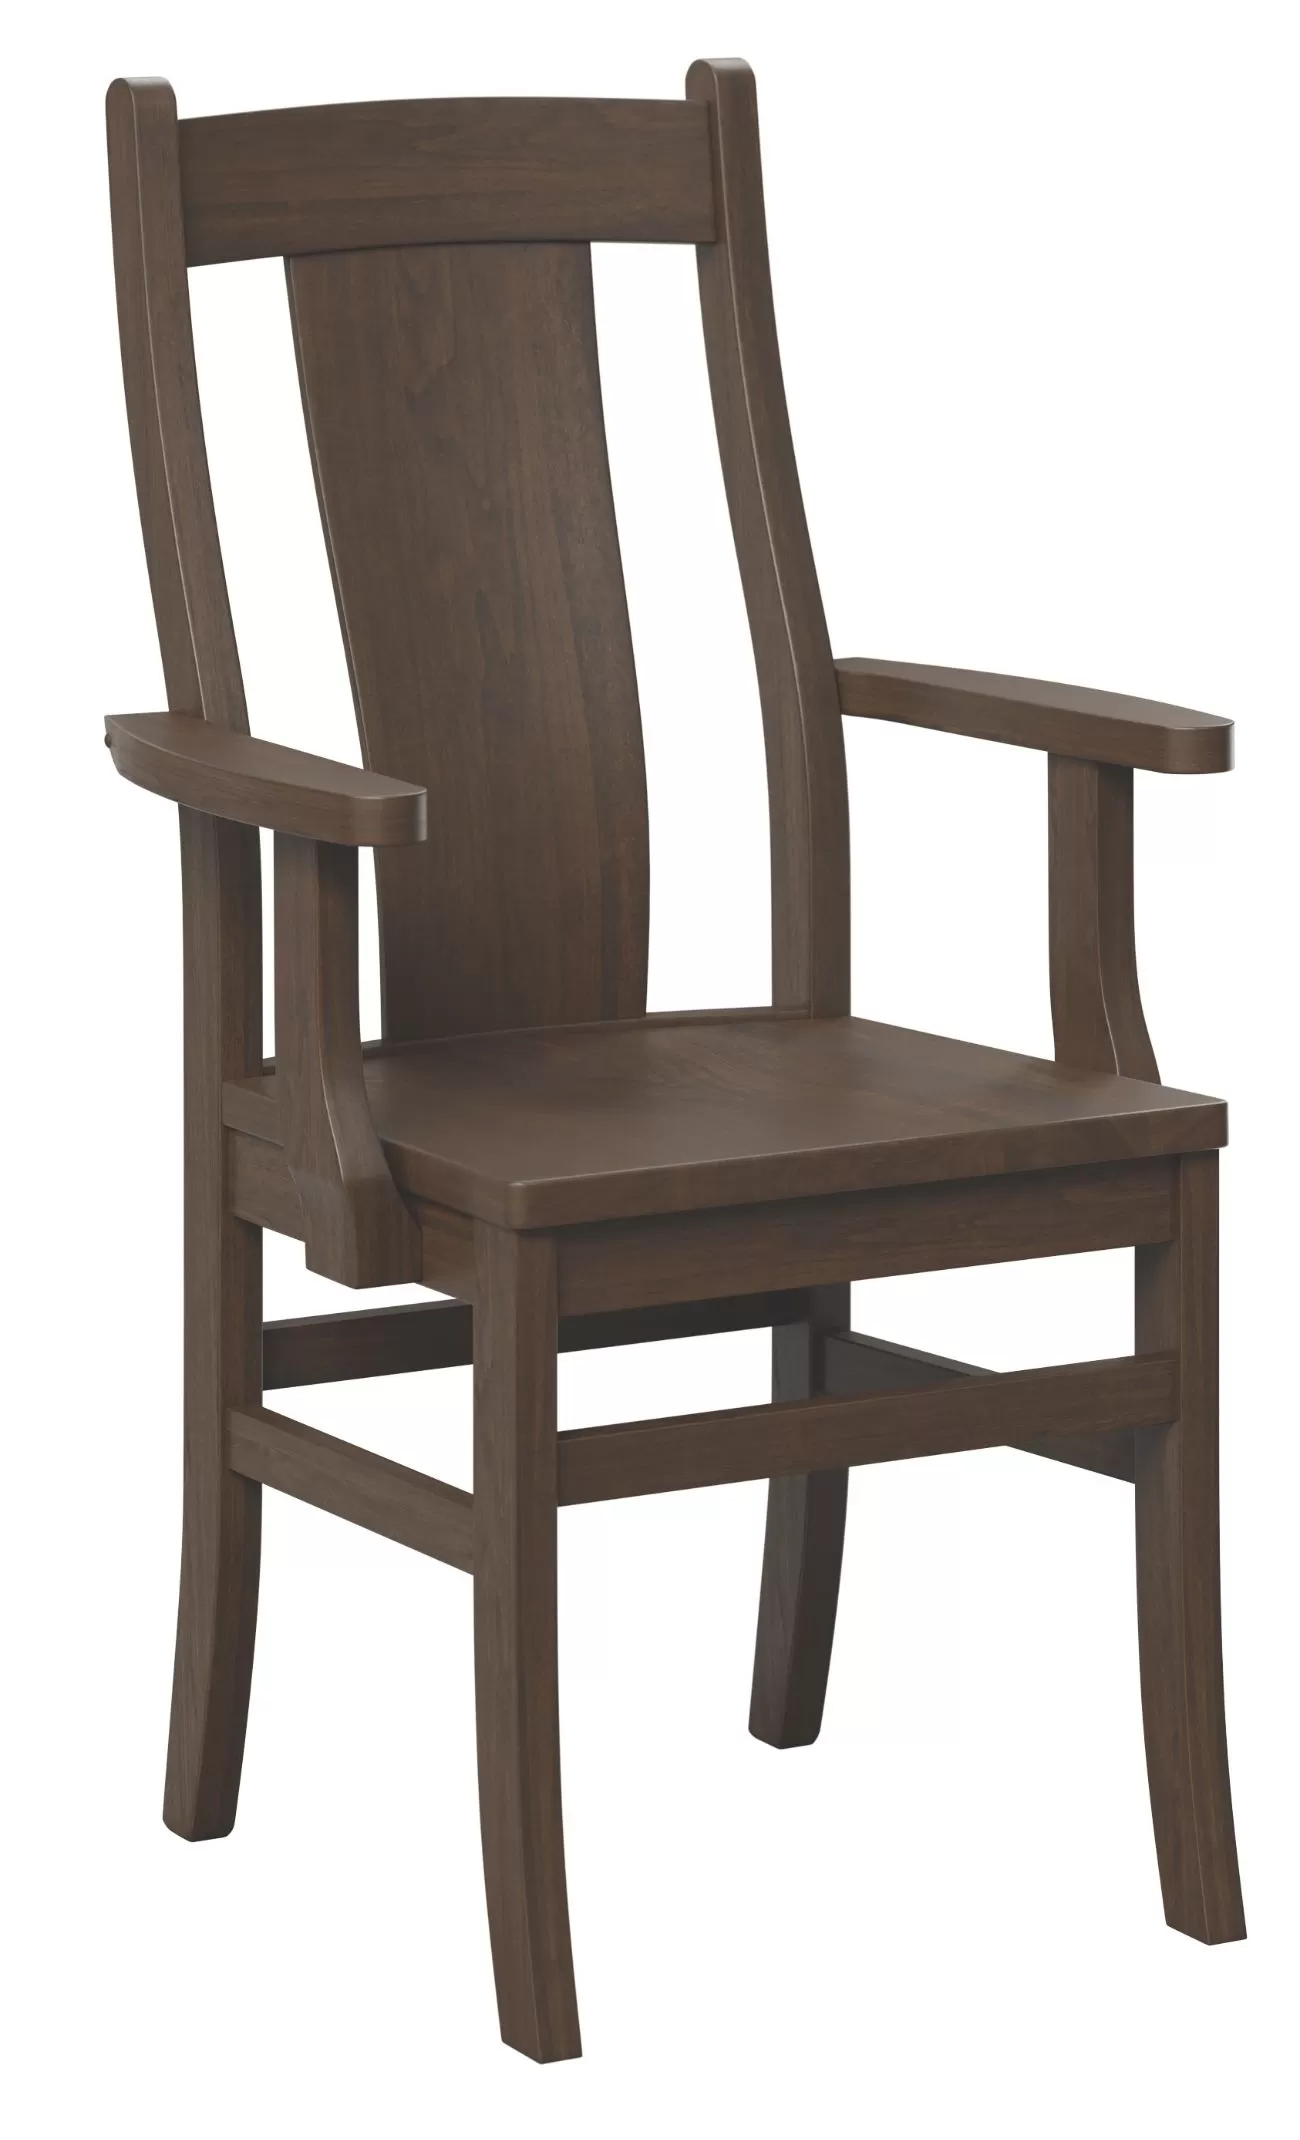 Huron arm chair